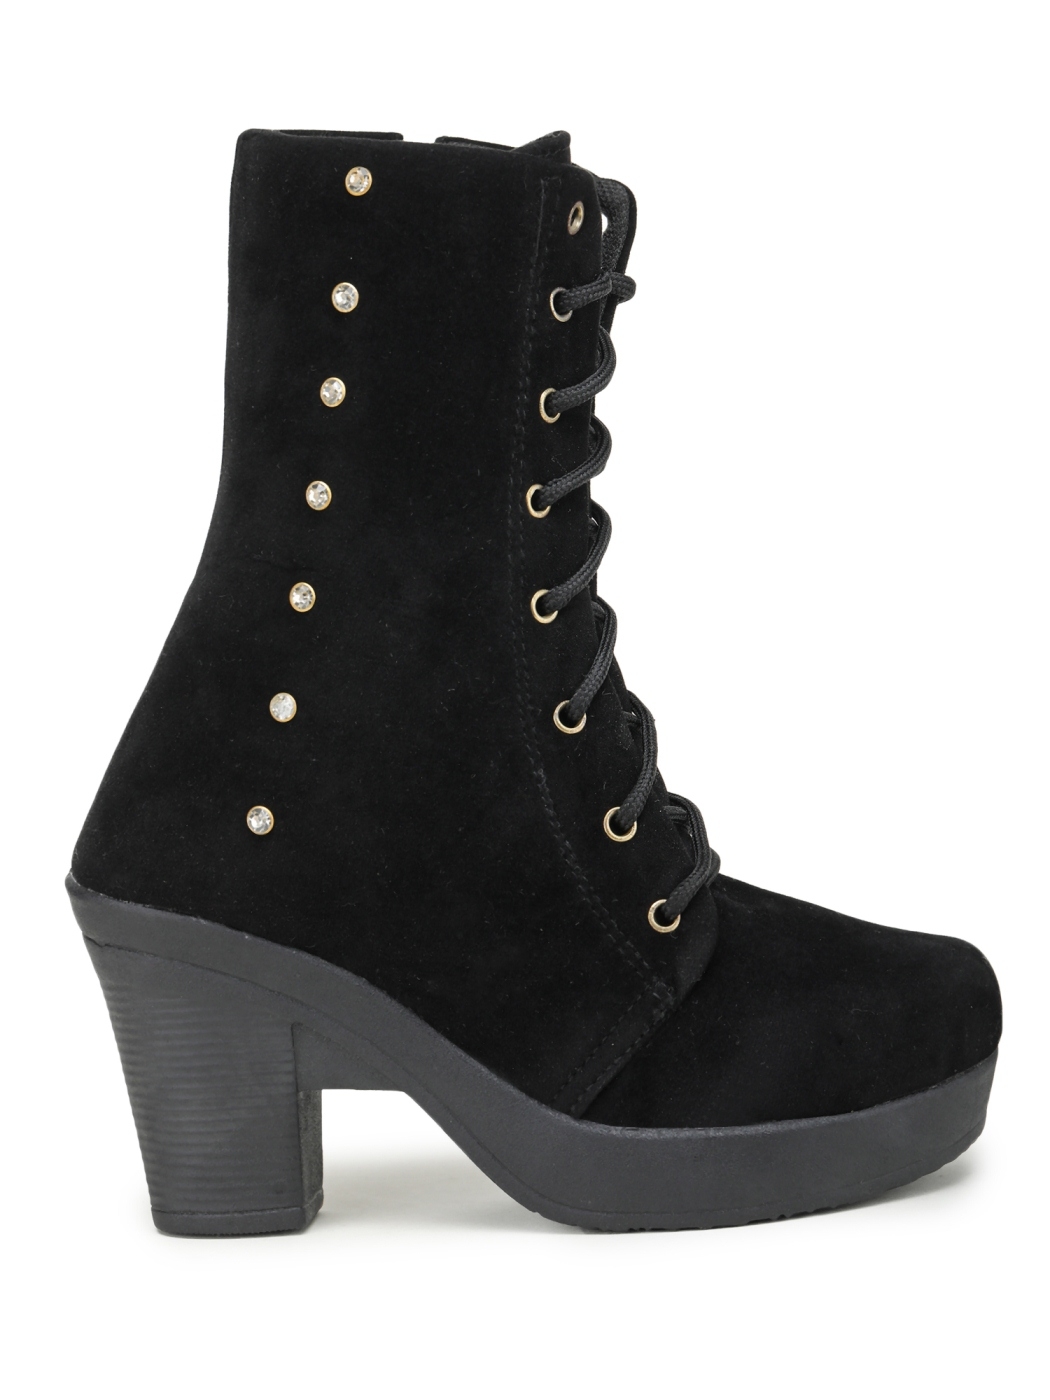 Buy Fiia Women Black Block Heel Calf Length Boots for Outdoor UK-3 at  Amazon.in